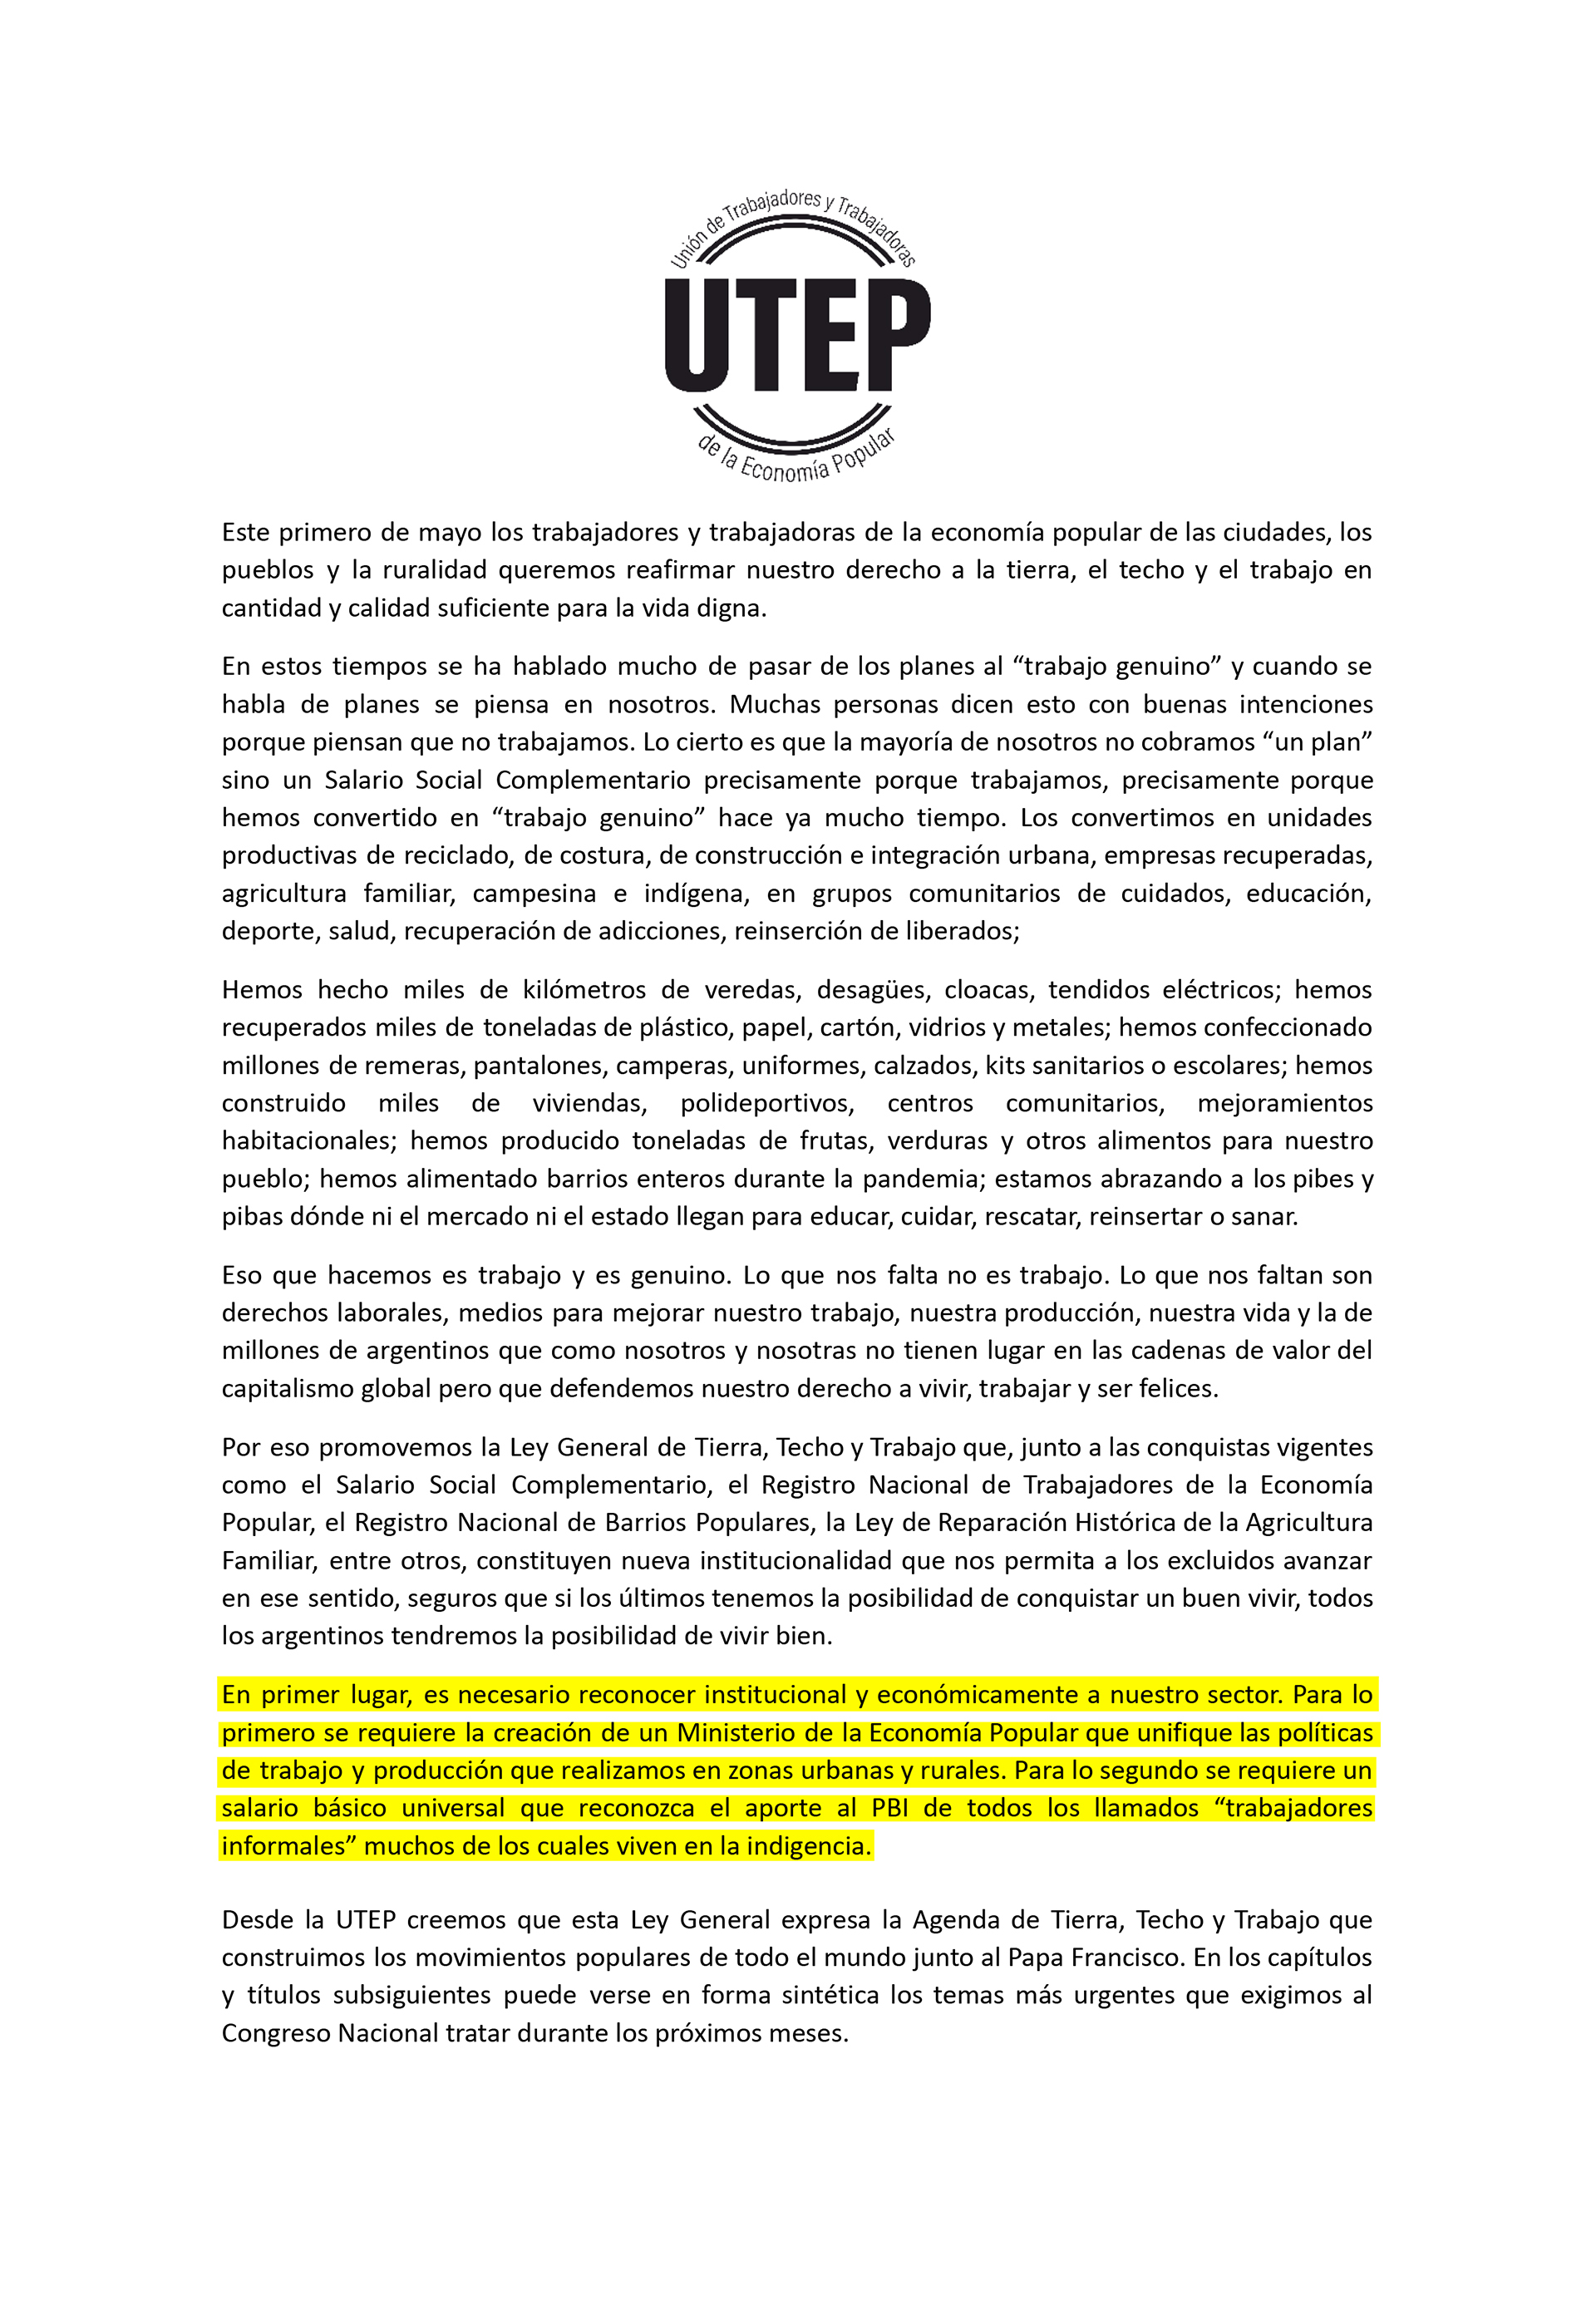 Documento de la UTEP a través del cual le reclaman a Alberto Fernández el ministerio de la Economía Popular